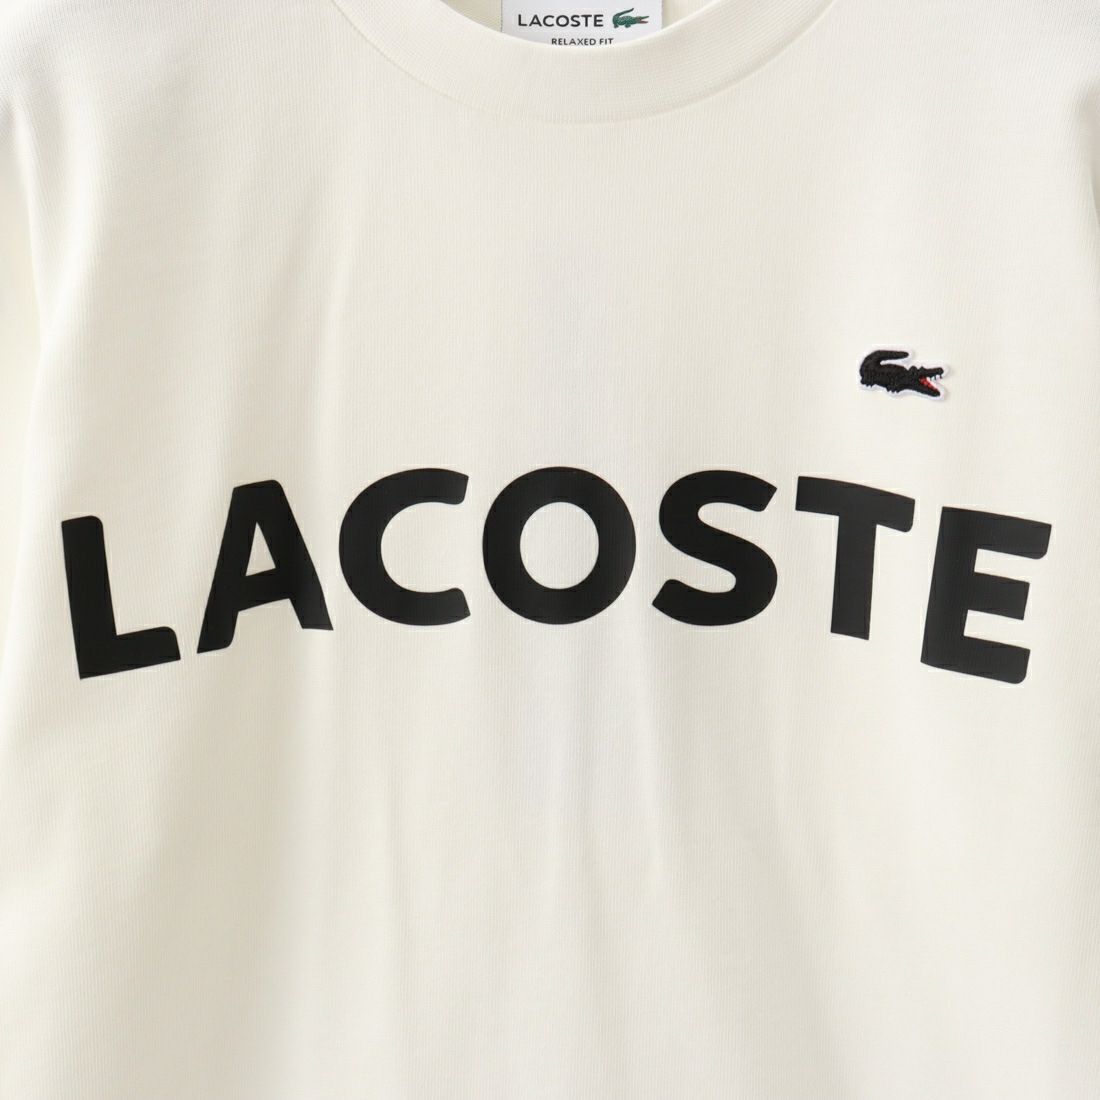 LACOSTE [ラコステ] ヘビーウェイトブランドネームロゴTシャツ [TH2299] 70V FLOUR